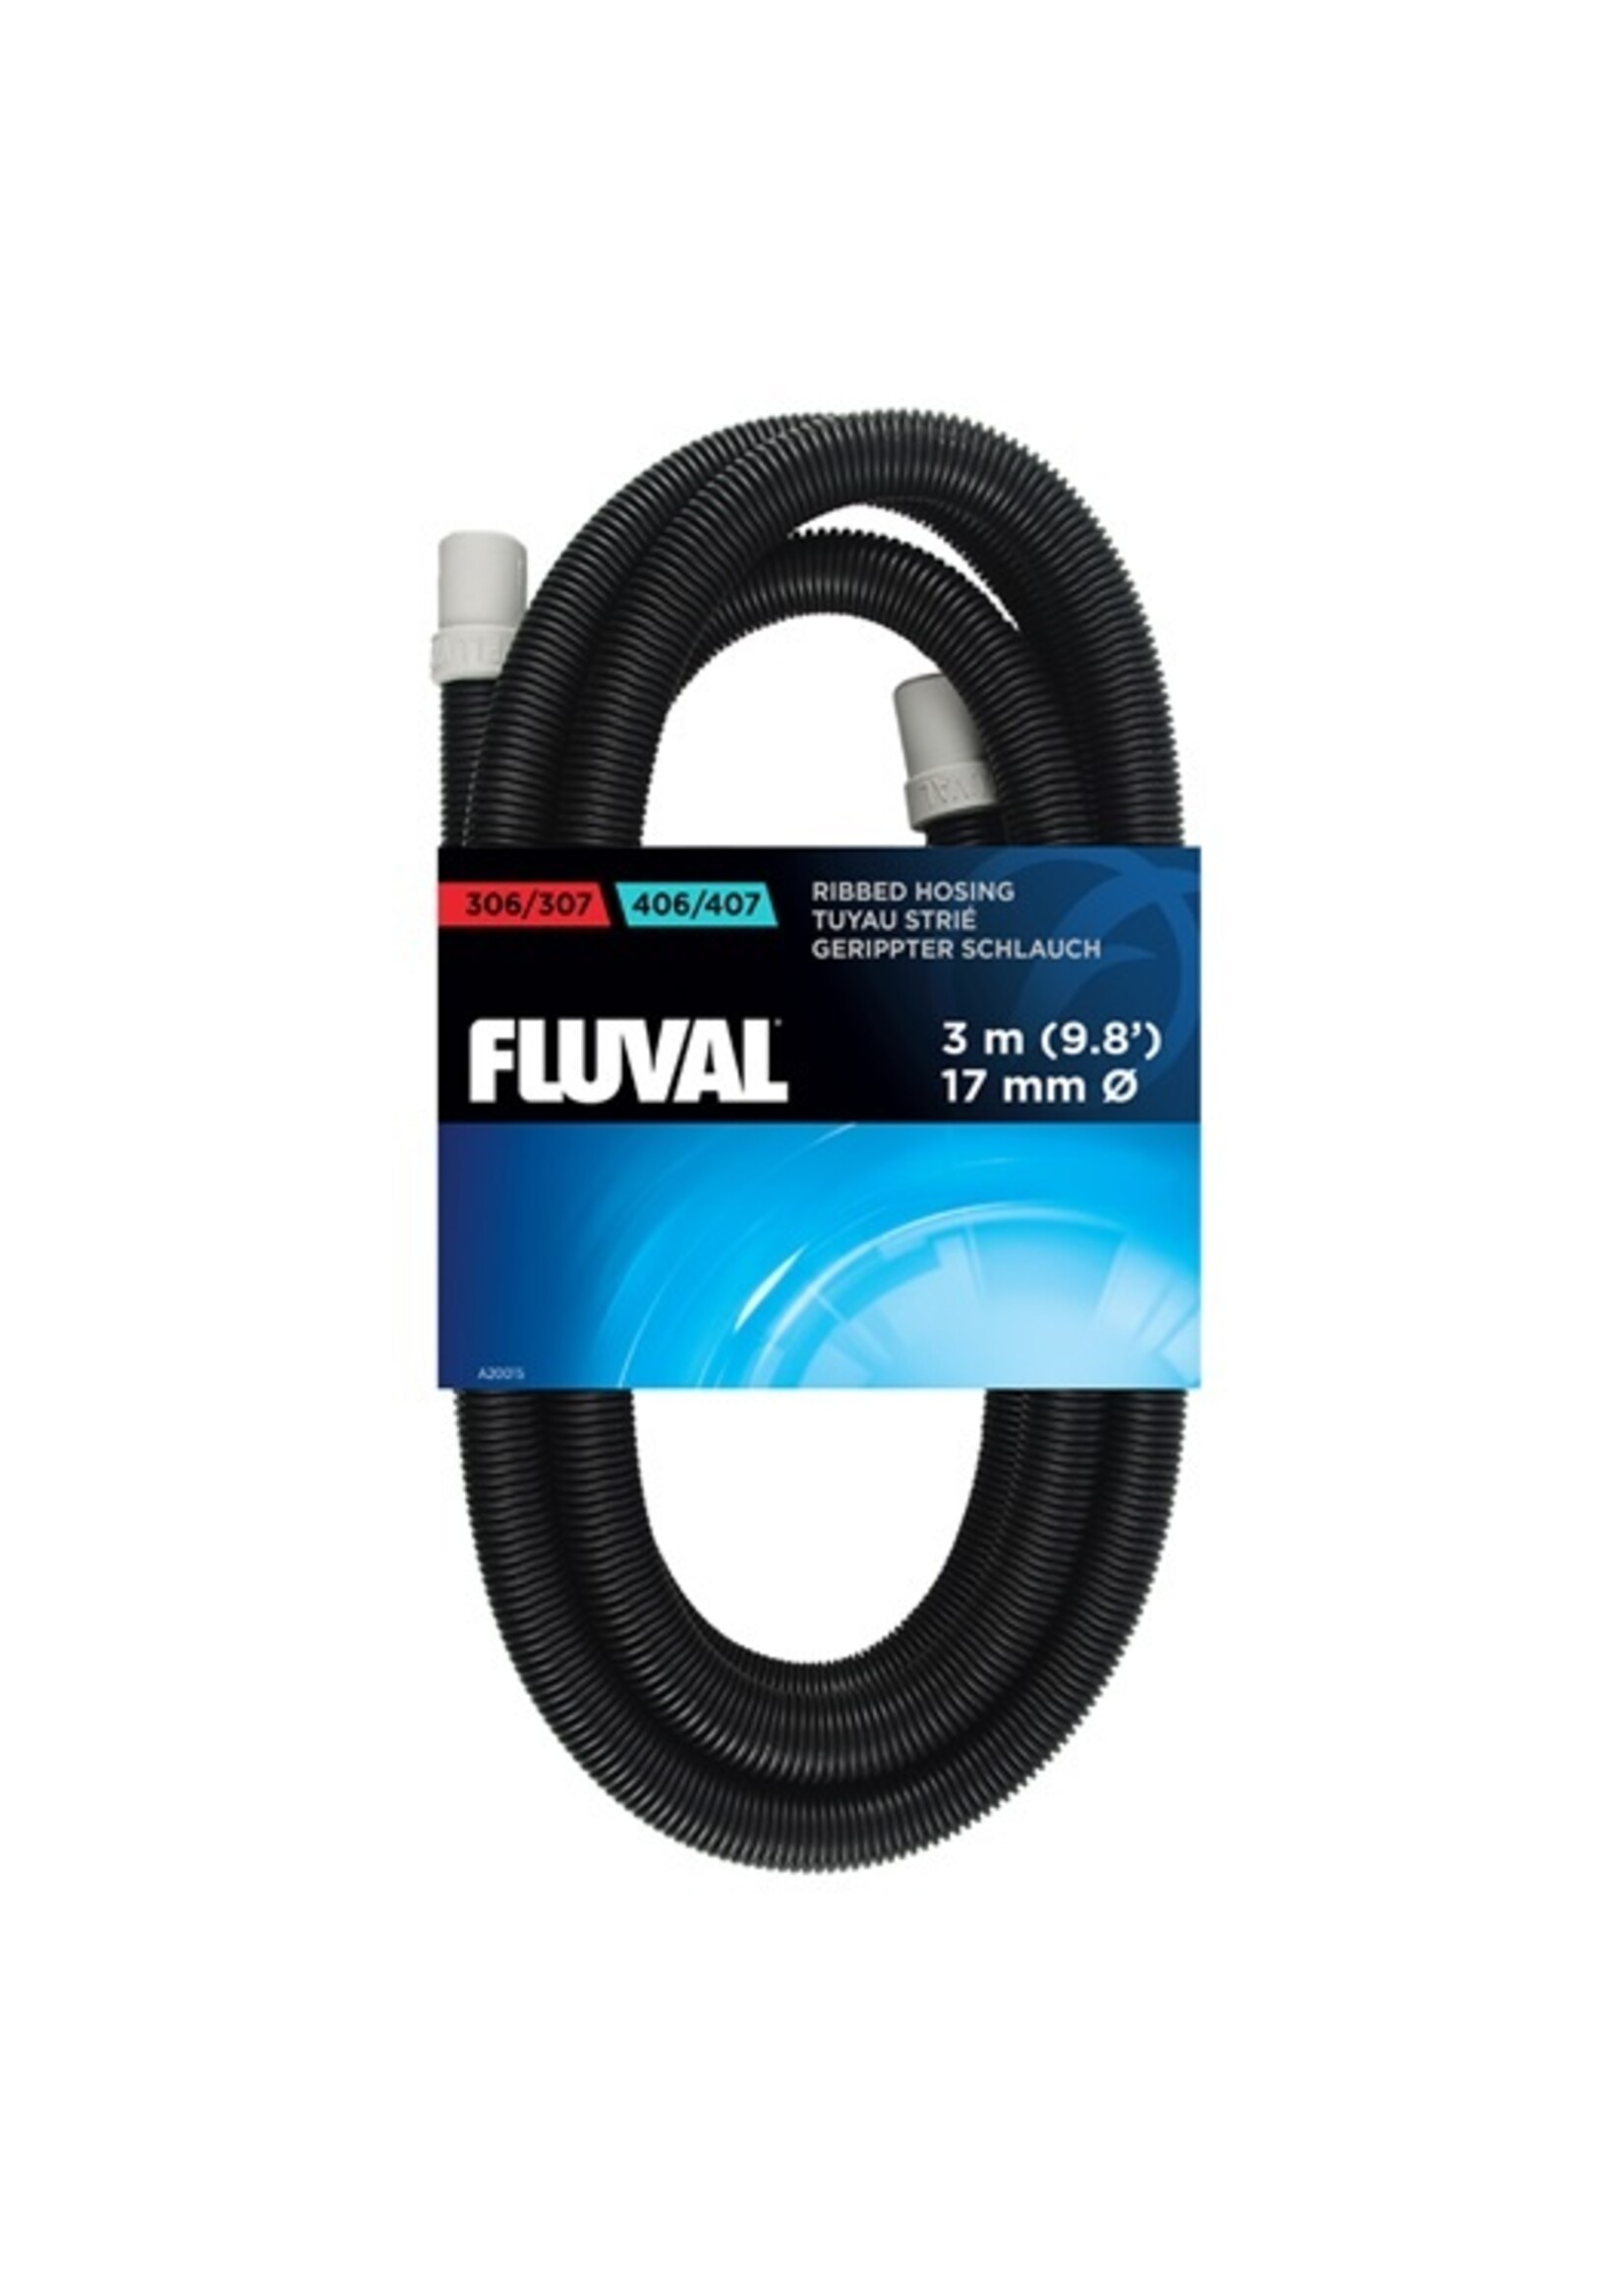 Fluval FluvalRibbed Hosing for Fluval External Filters (A20015)